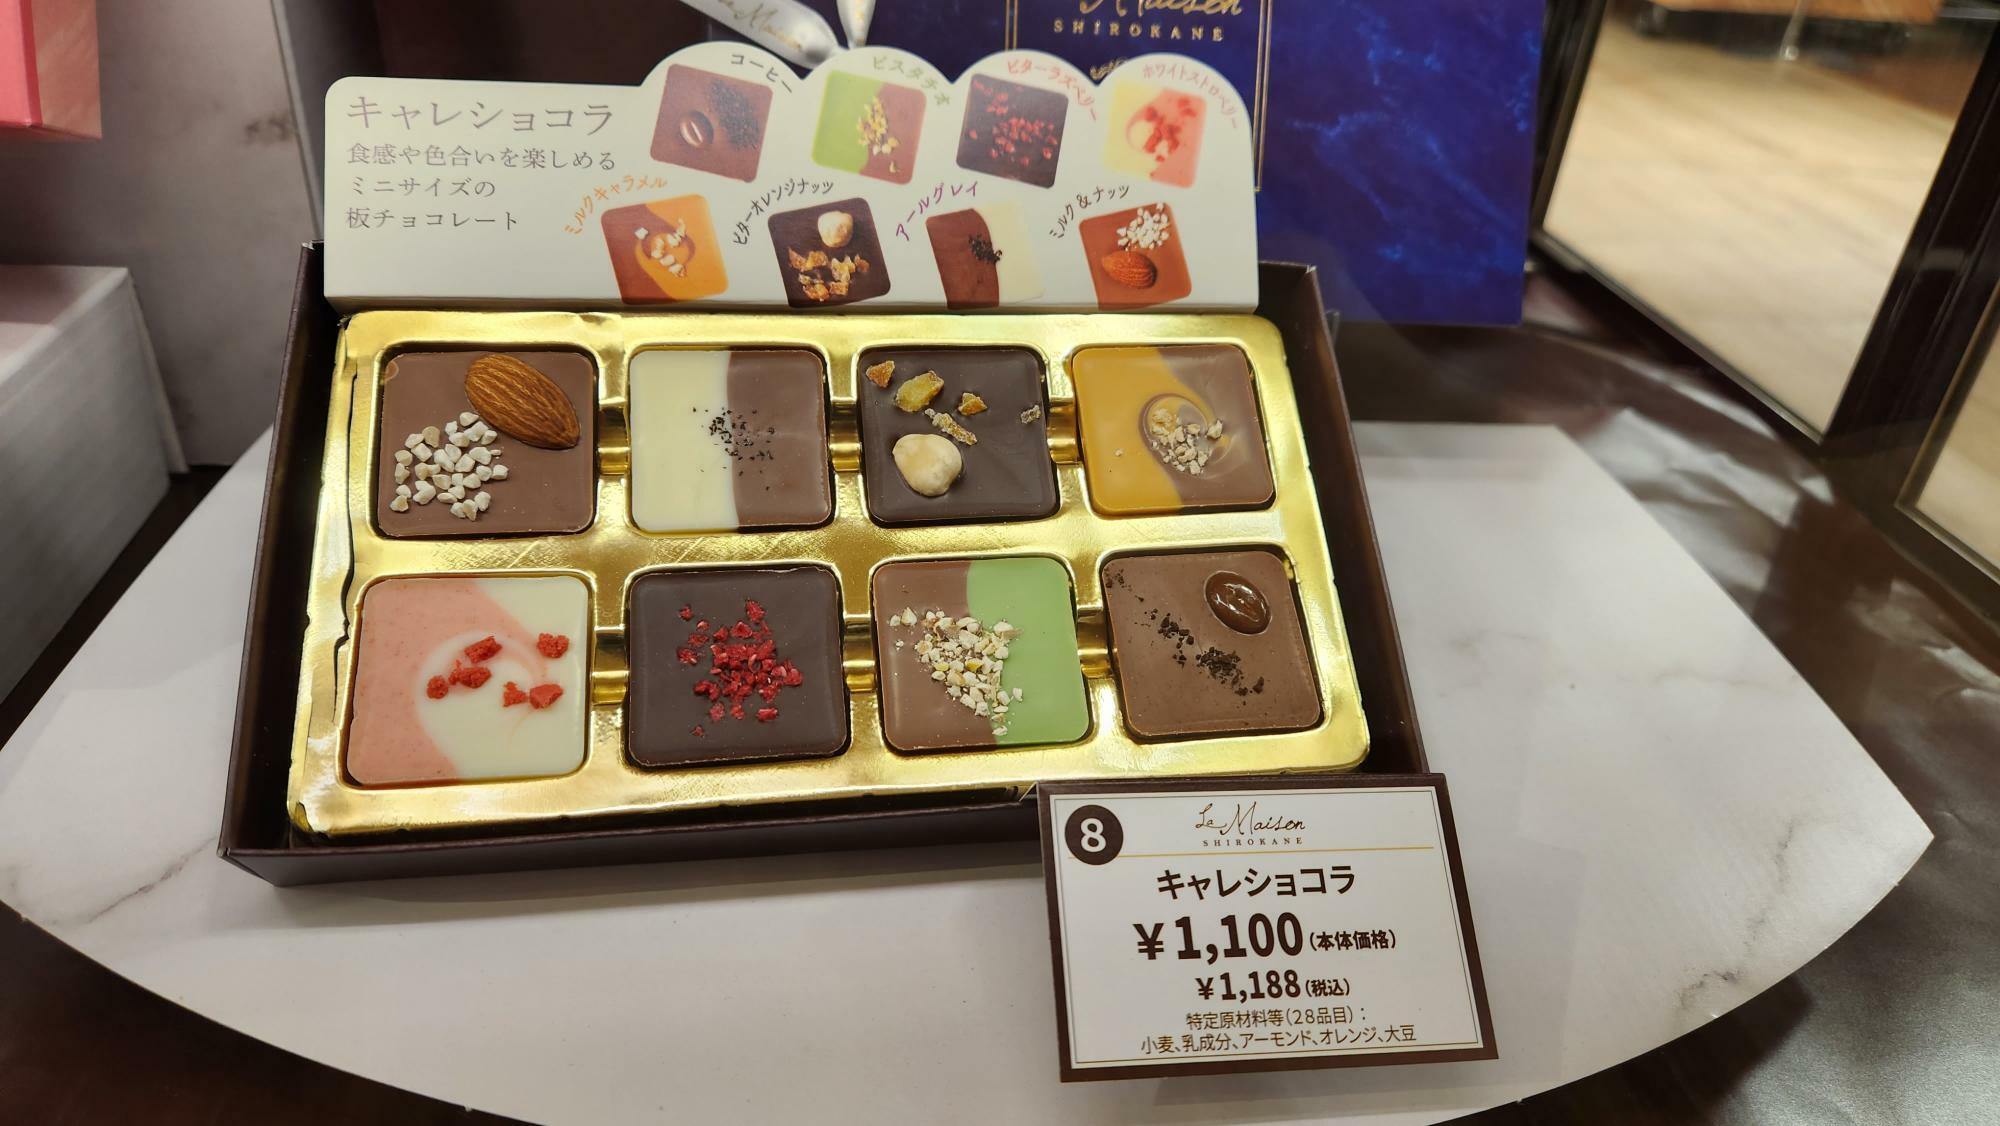 食感や色合いを楽しめるミニサイズの板チョコレート「キャレショコラ」